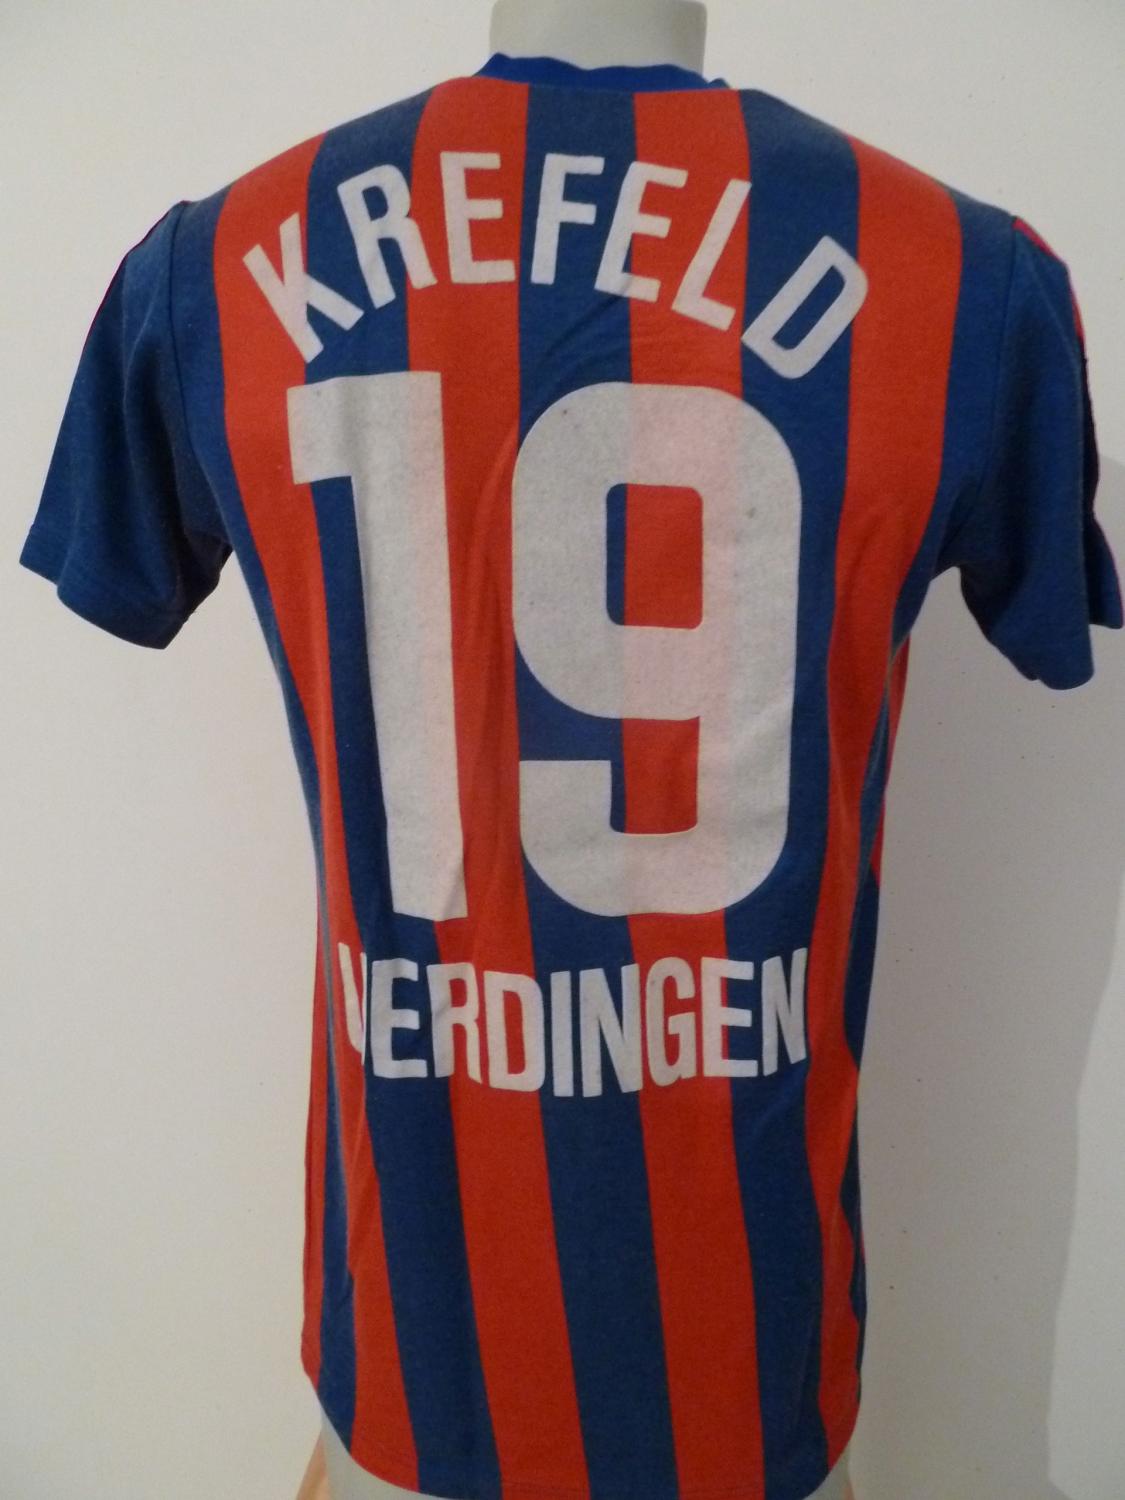 maillot kfc uerdingen 05 domicile 1990-1991 rétro